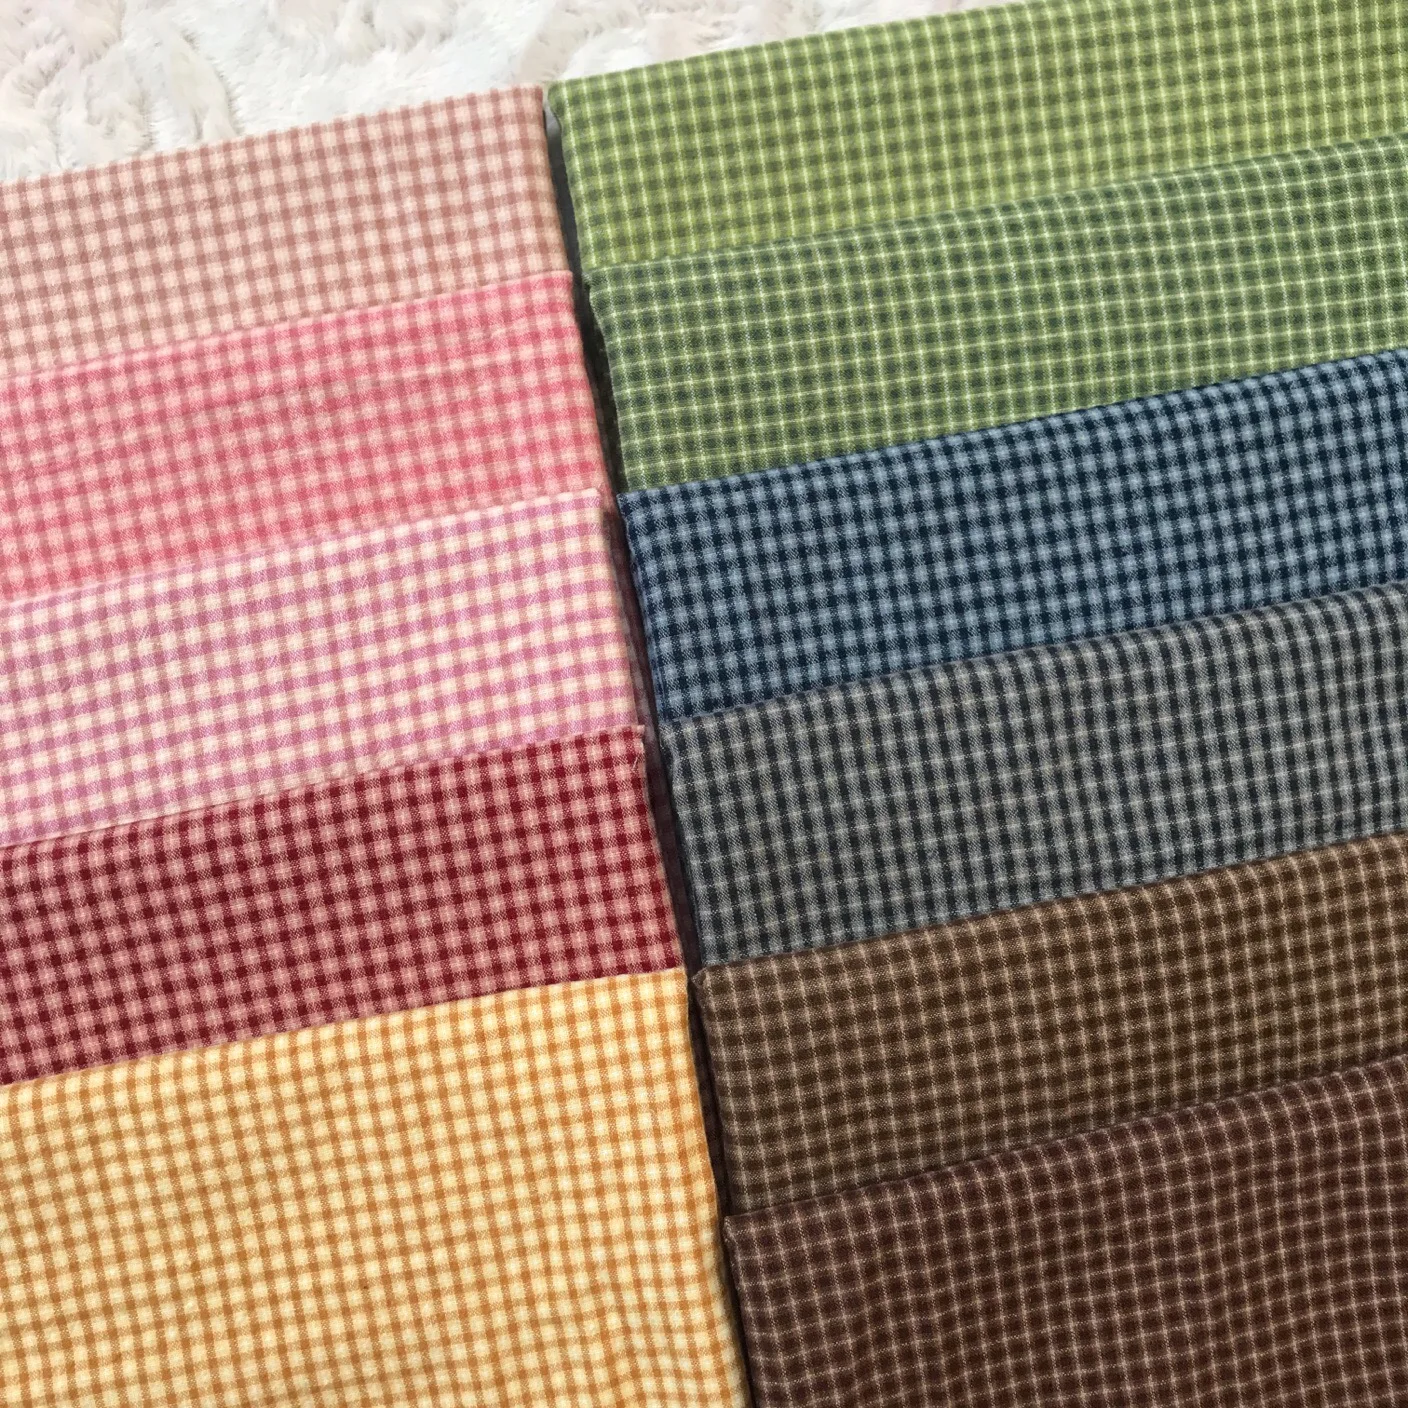 DIY Япония маленькая ткань группа окрашенная пряжа ткань, для шитья ручная работа пэтчворк стеганая сетка полоса точка случайный 1 стиль/Лот 50*70 см